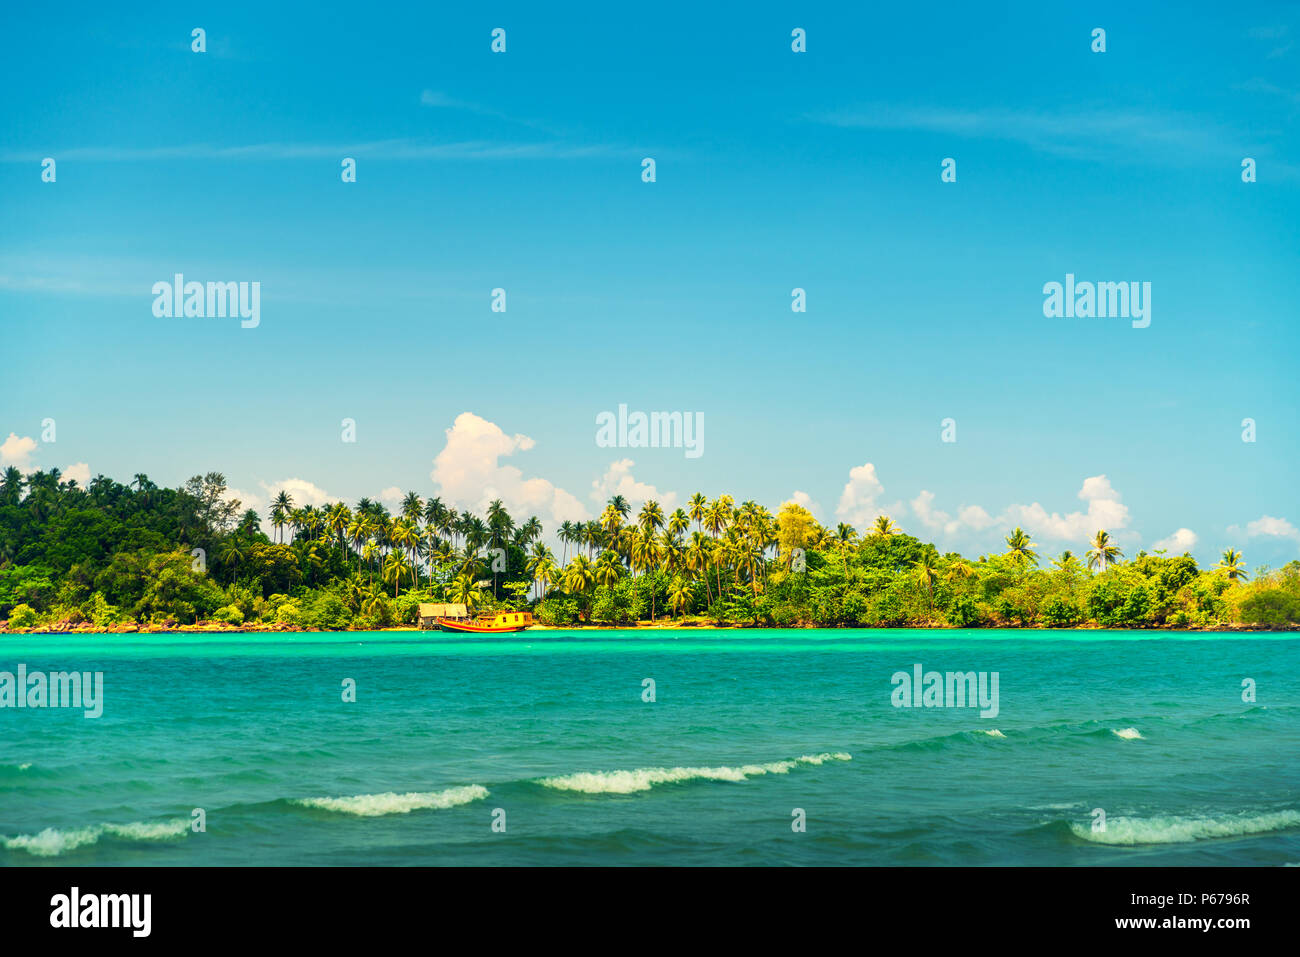 Isola tropicale con palme di cocco sulla spiaggia sabbiosa Foto Stock